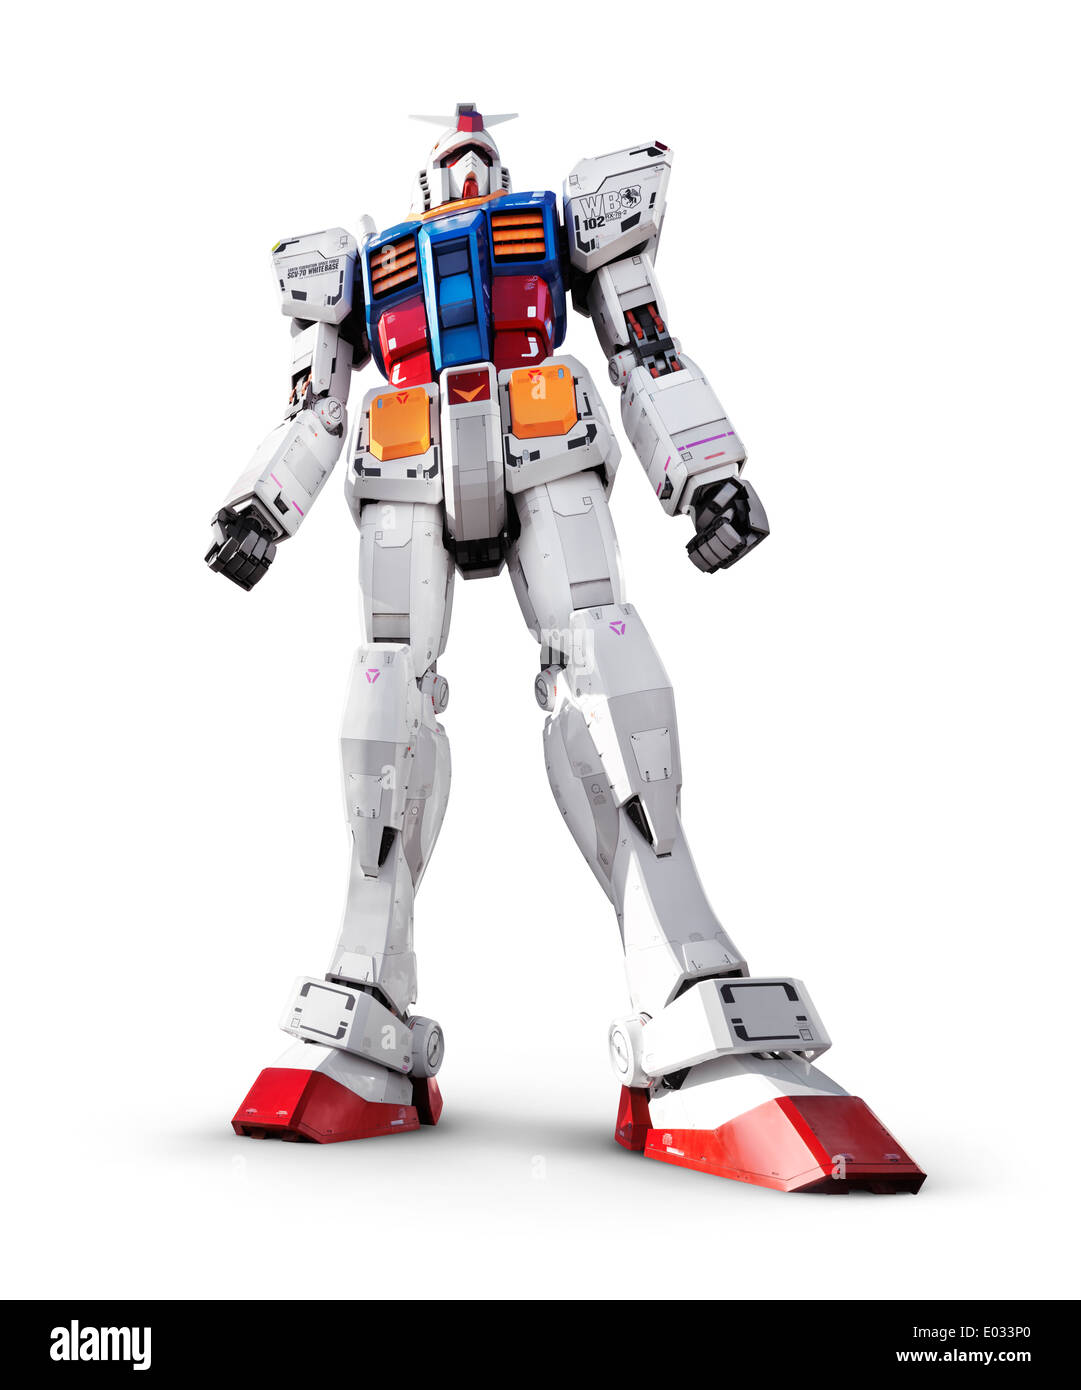 Licence disponible sur MaximImages.com - Gundam RX-78-2 robot géant, statue de costume mobile isolée sur fond blanc avec chemin de coupure Banque D'Images